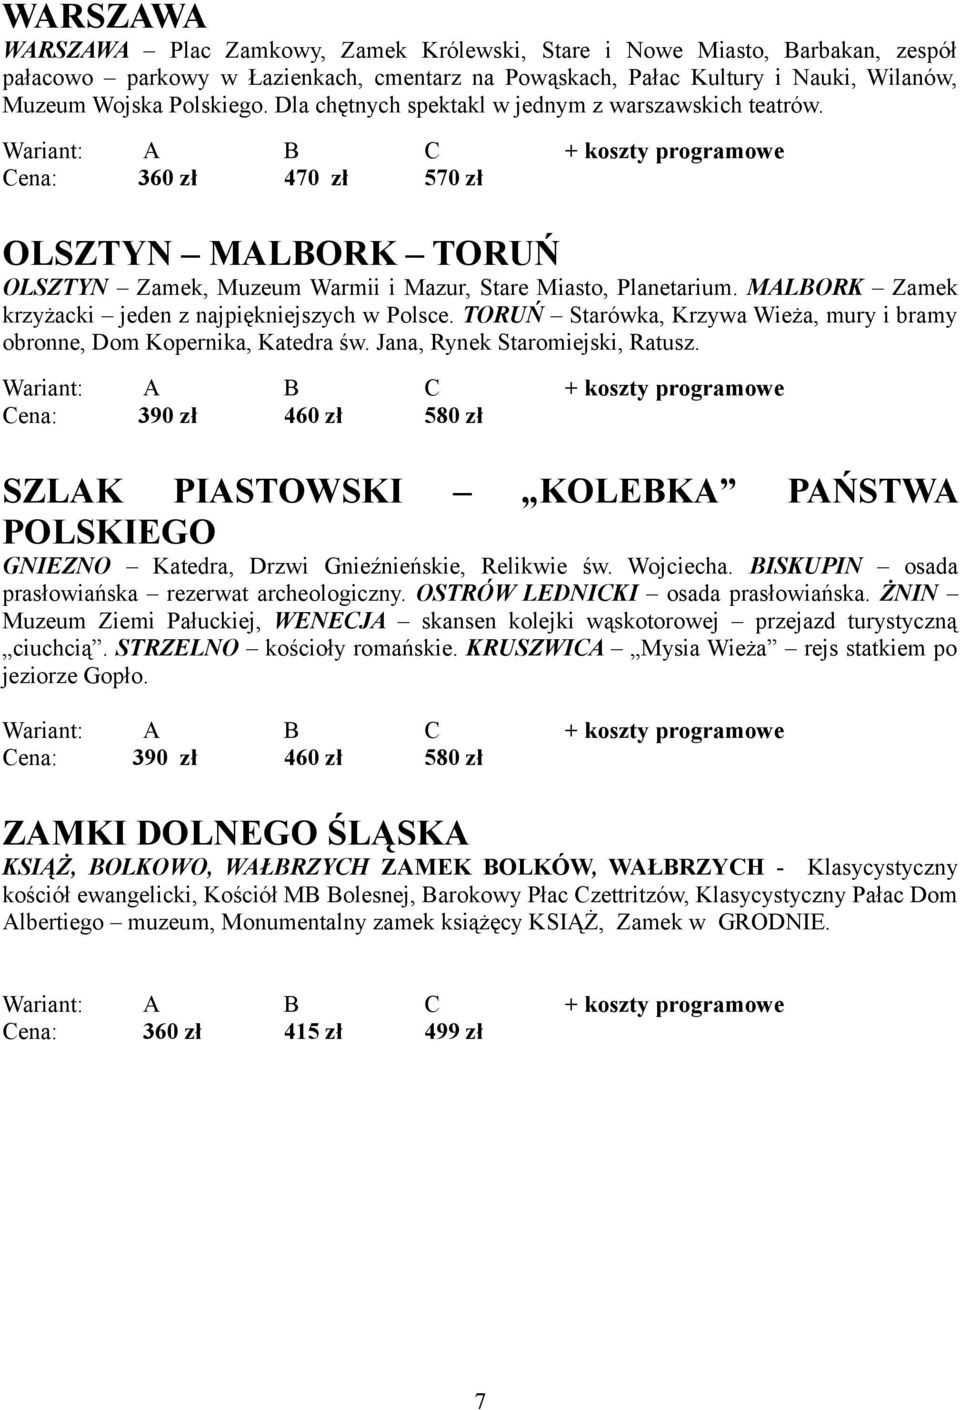 MALBORK Zamek krzyżacki jeden z najpiękniejszych w Polsce. TORUŃ Starówka, Krzywa Wieża, mury i bramy obronne, Dom Kopernika, Katedra św. Jana, Rynek Staromiejski, Ratusz.